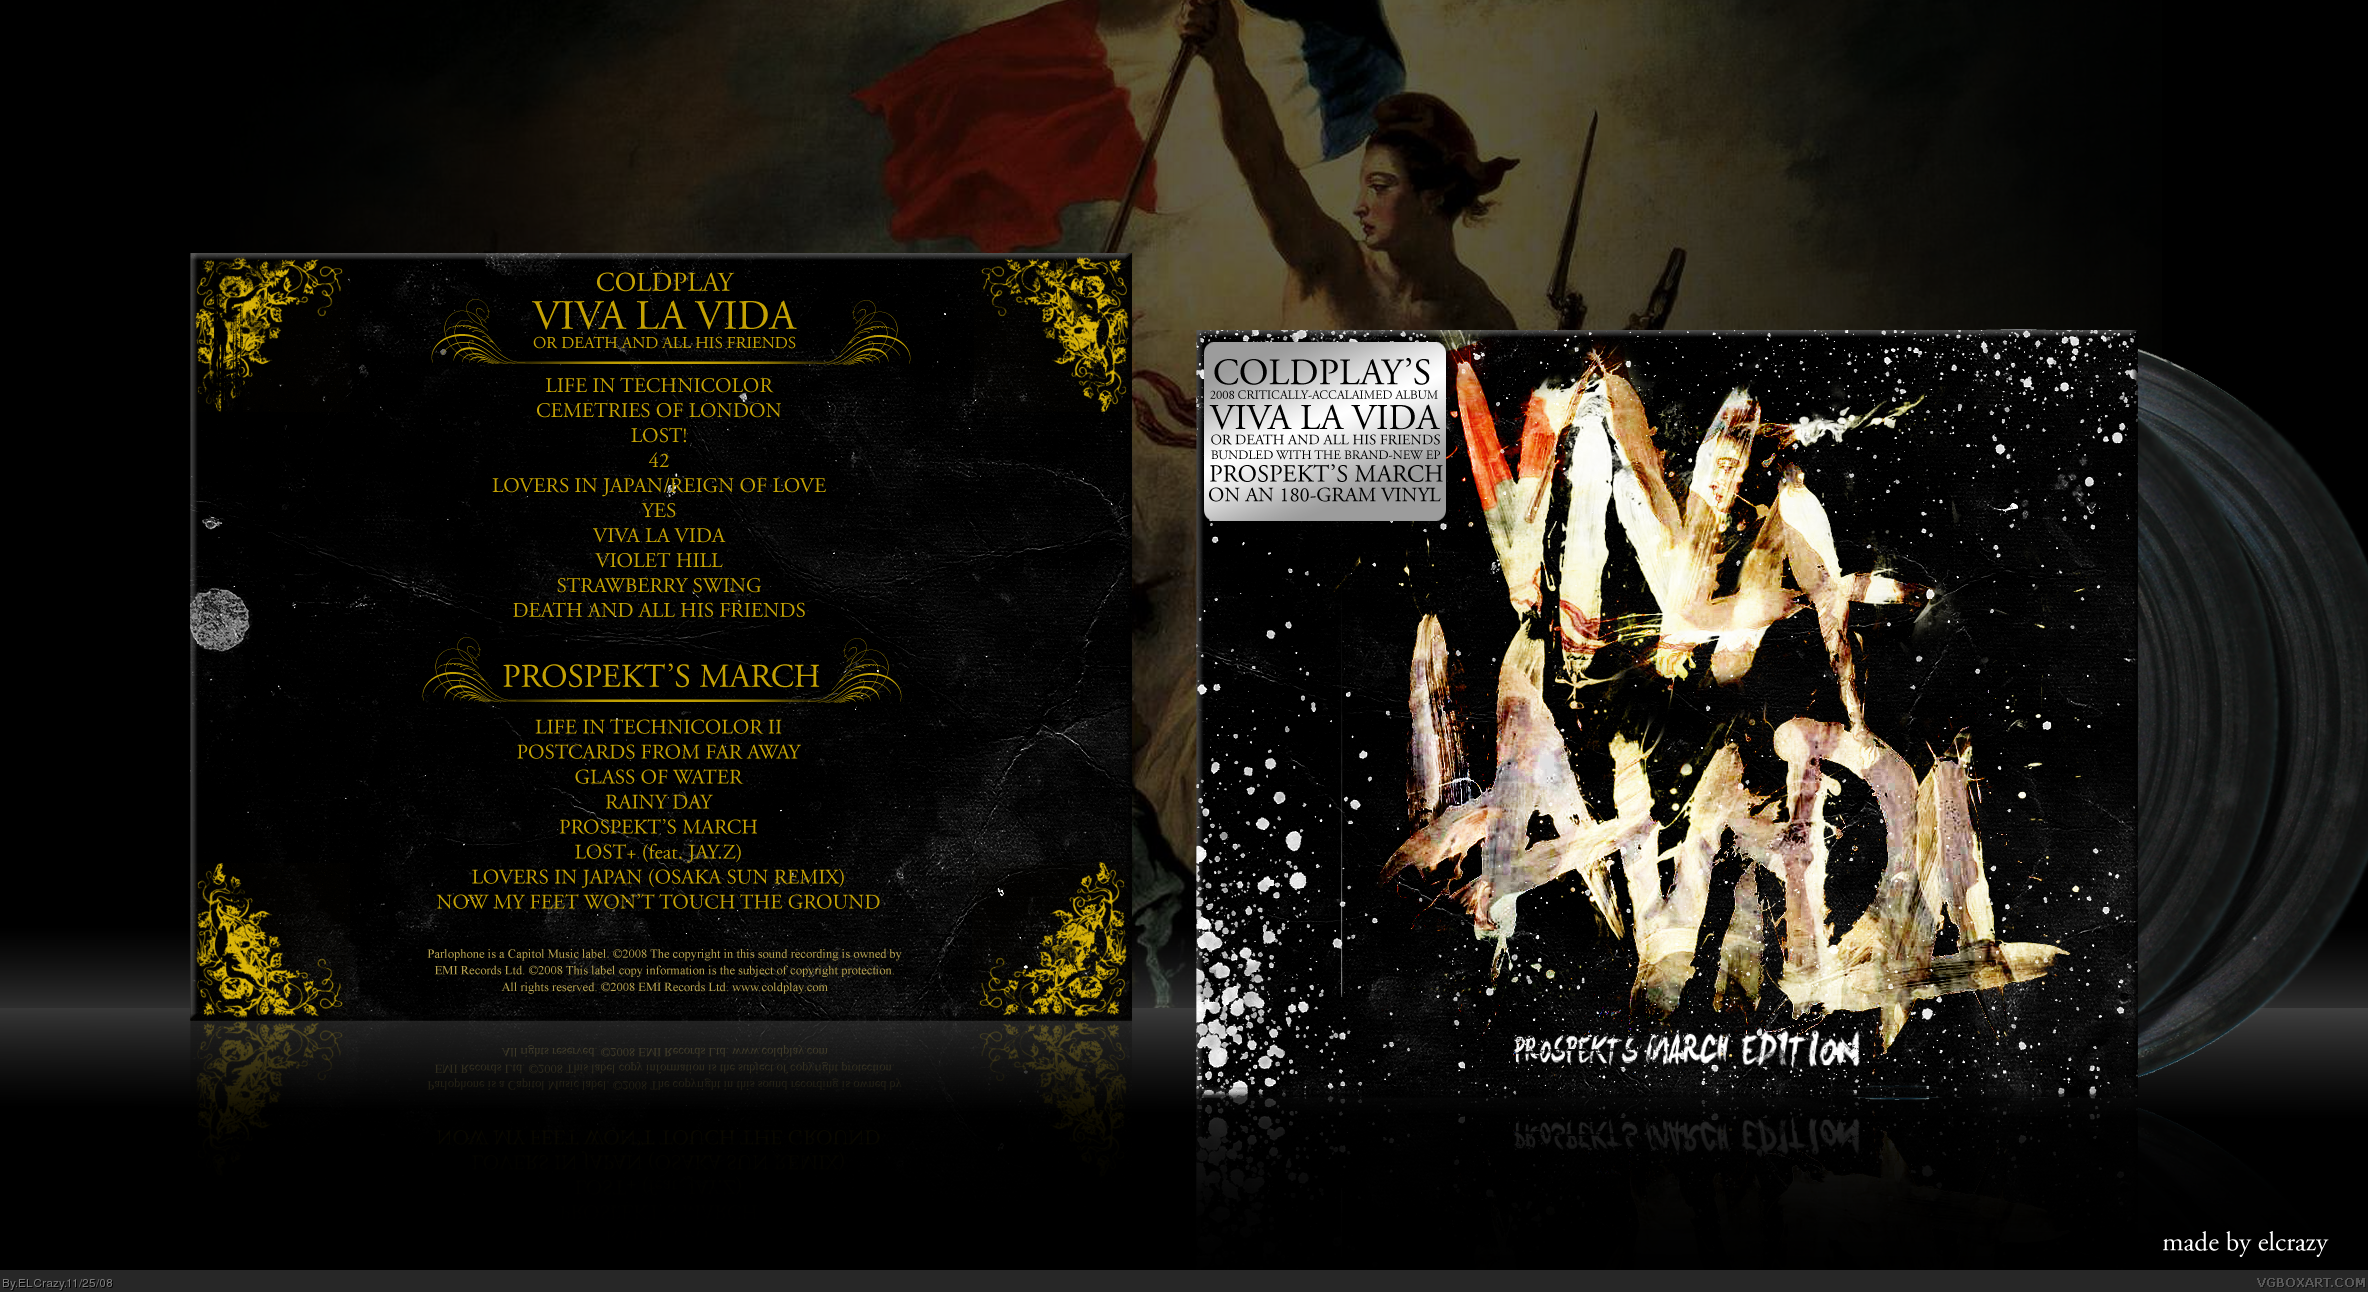 Coldplay: Viva La Vida - Prospekt's March Edition box cover